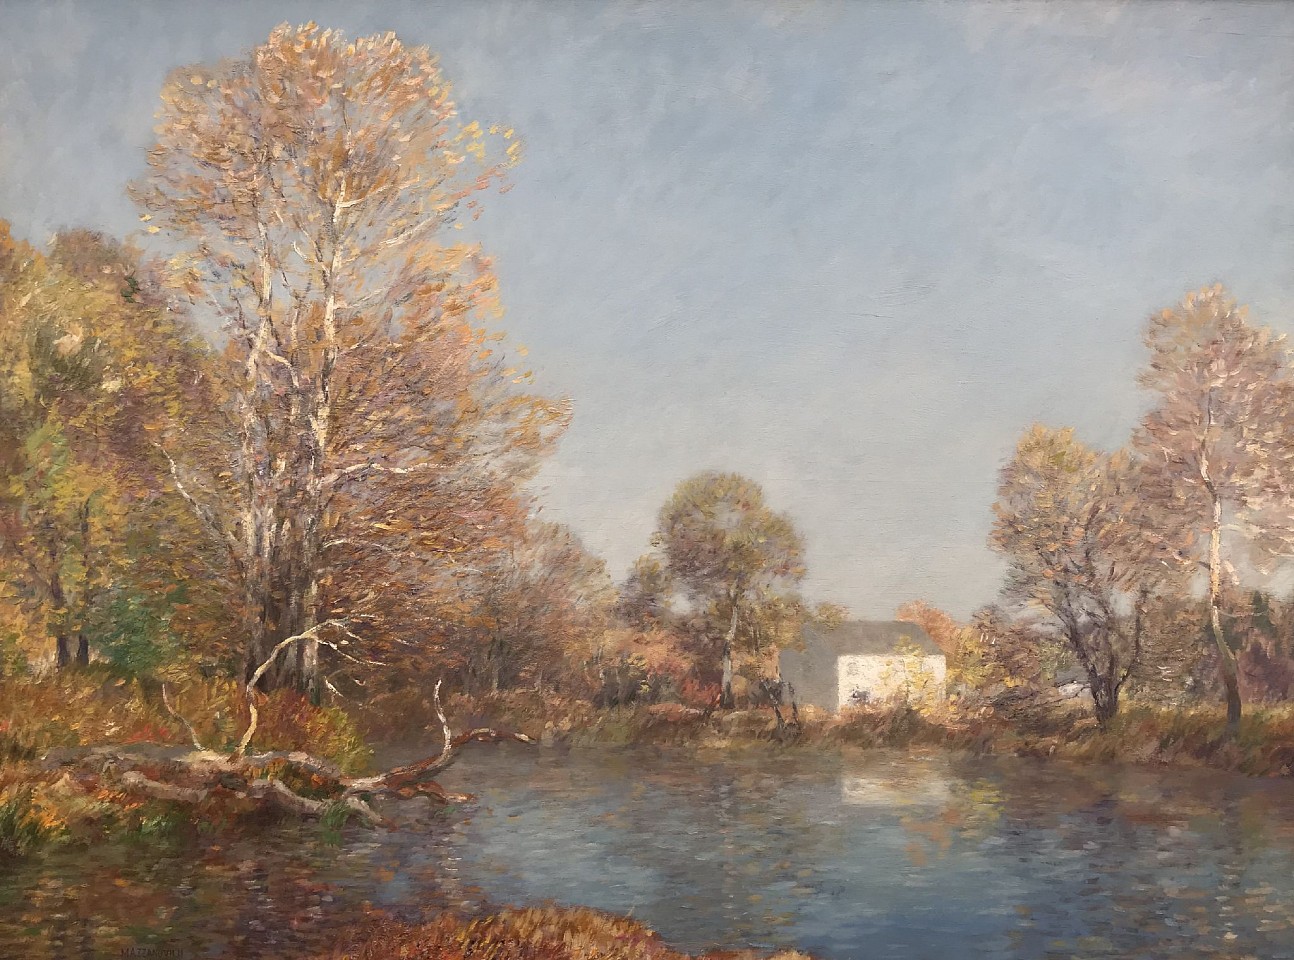 Lawrence Mazzanovich, The River, Autumn
oil on panel, 24" x 32"
signed Mazzanovich, lower right
JCA 6285
$15,000